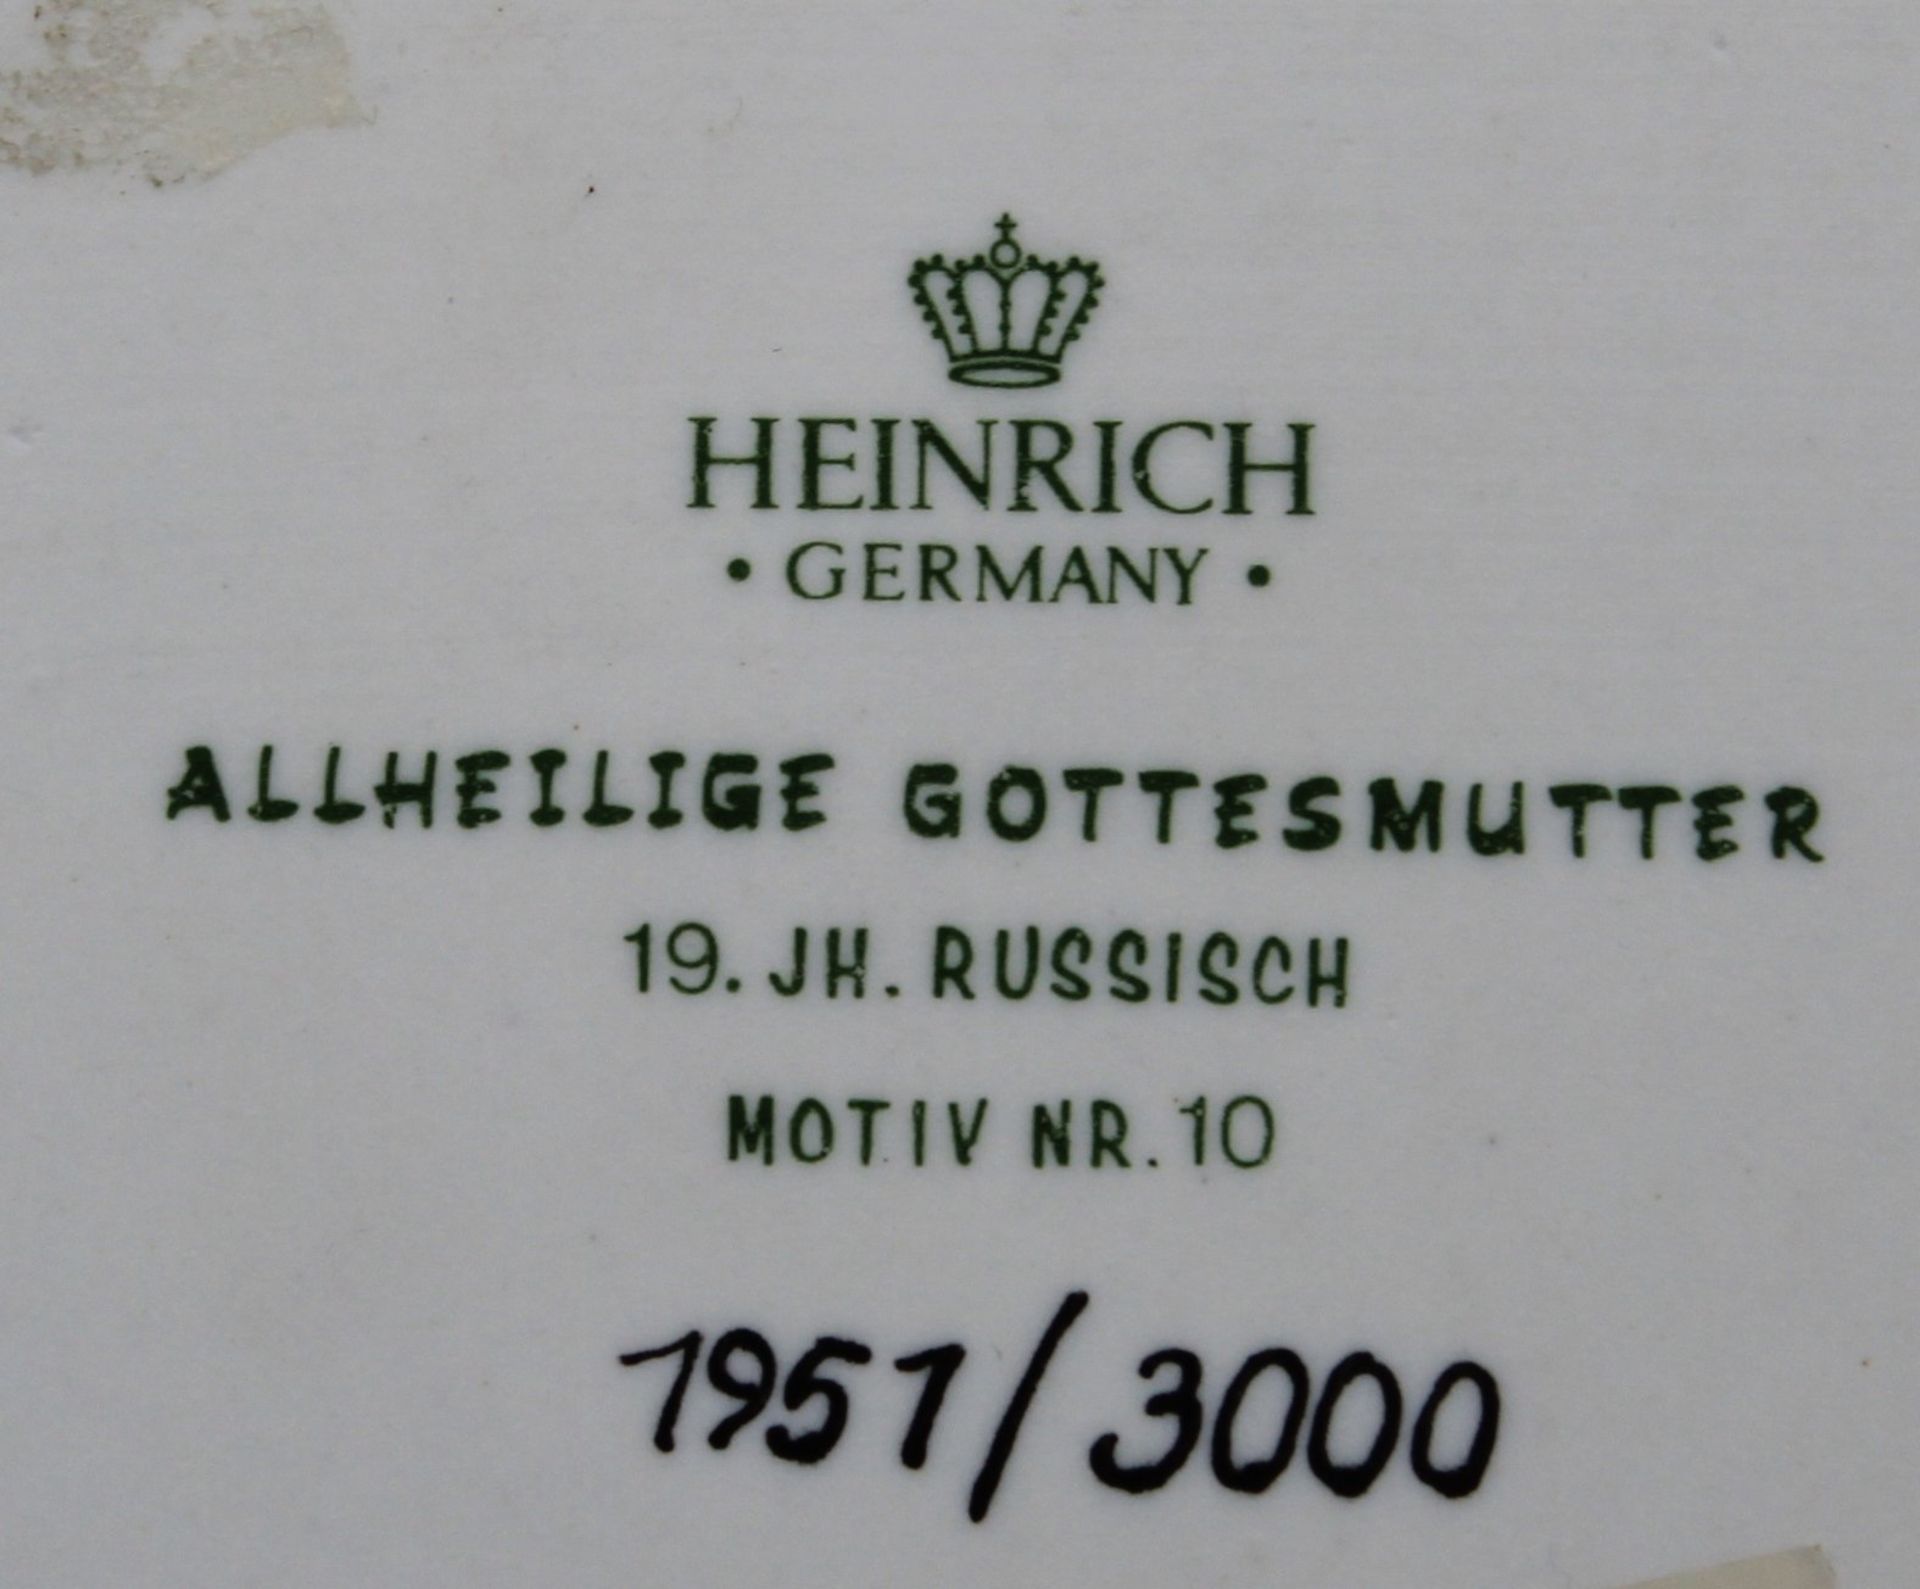 Heinrich-Ikone, Allheilige Gottesmutter, Motiv. 10, limit. 1951/3000, gerahmt, RG 29 x 22,5cm. - Bild 4 aus 4